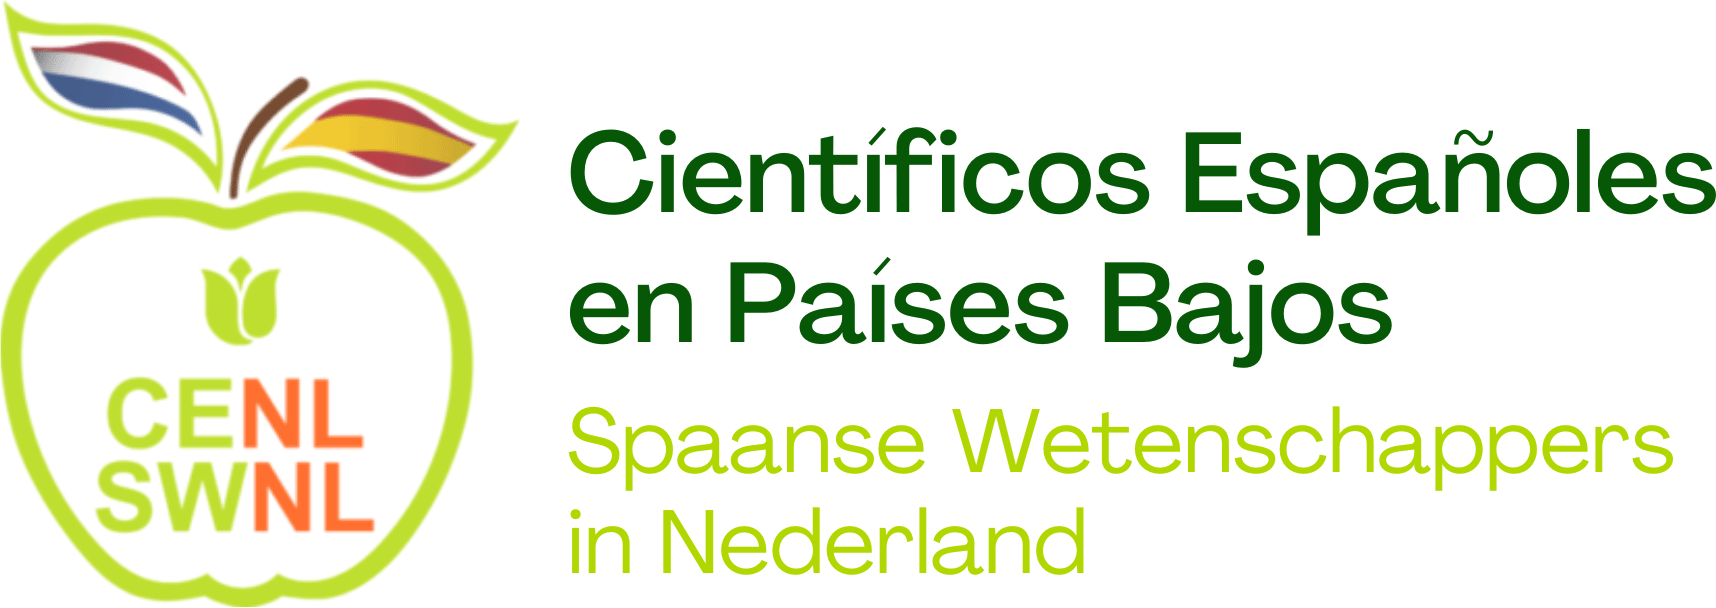 Vereniging van Spaanse Wetenschappers in Nederland